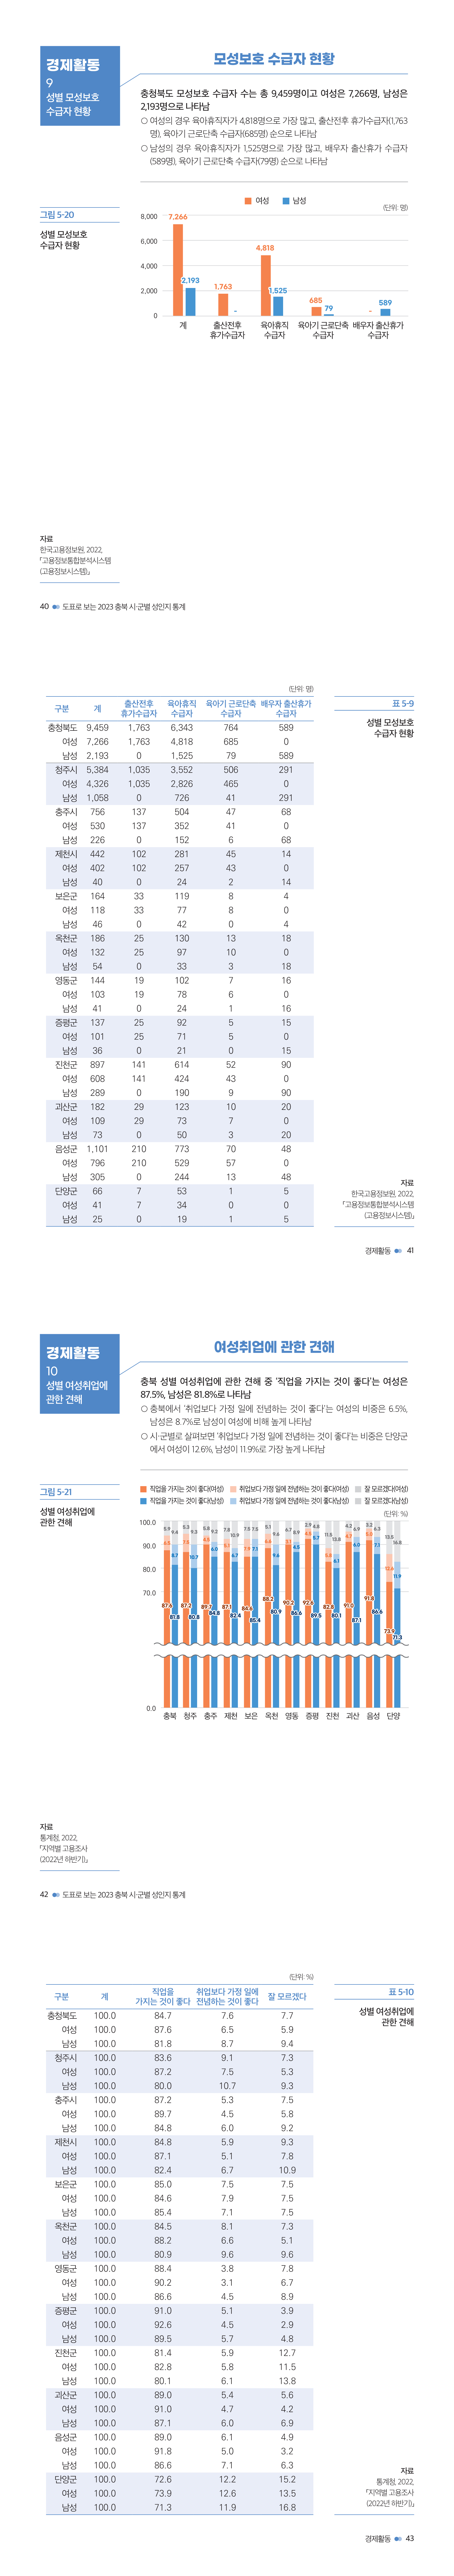 충북여성재단-성인지통계(인포)_웹용_경제5.jpg